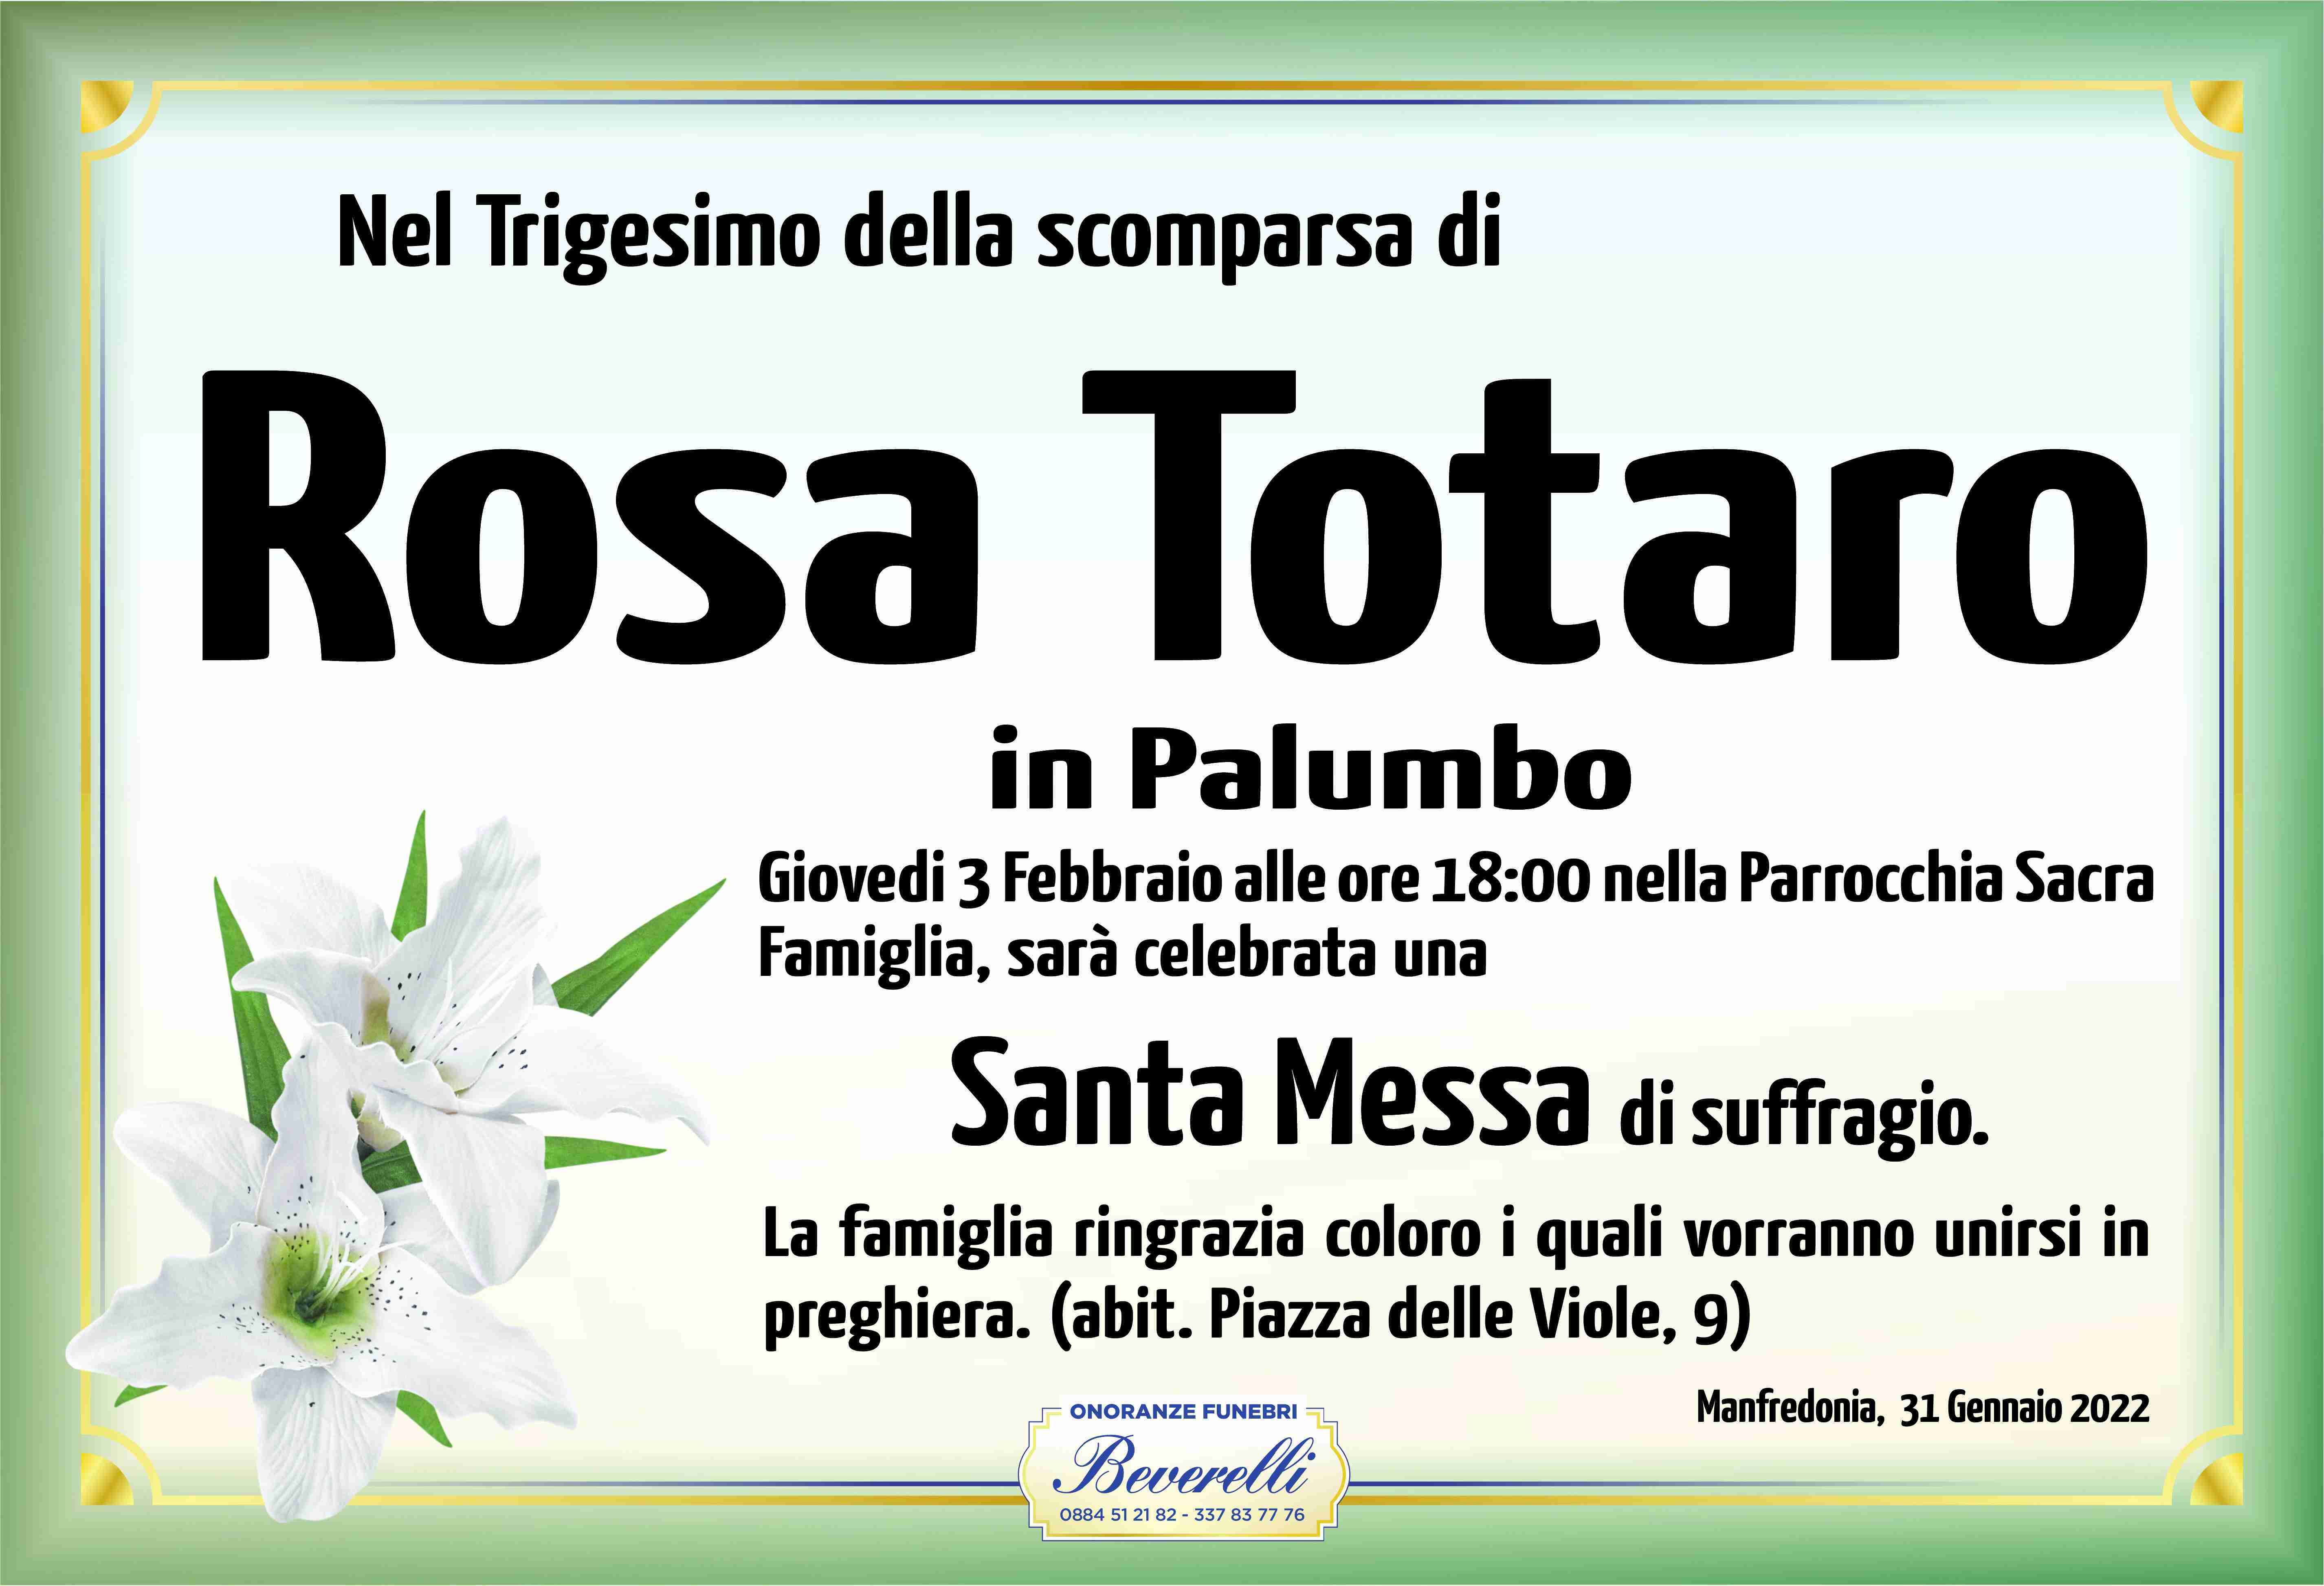 Rosa Totaro